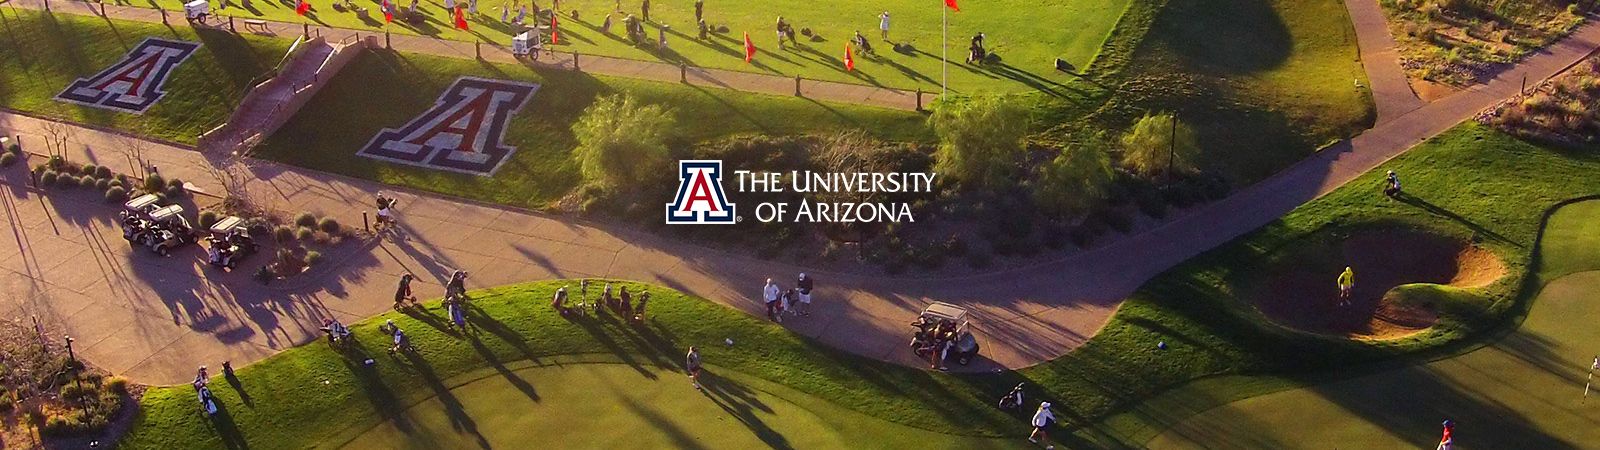 Sewailo UA Golf Course in Tucson 